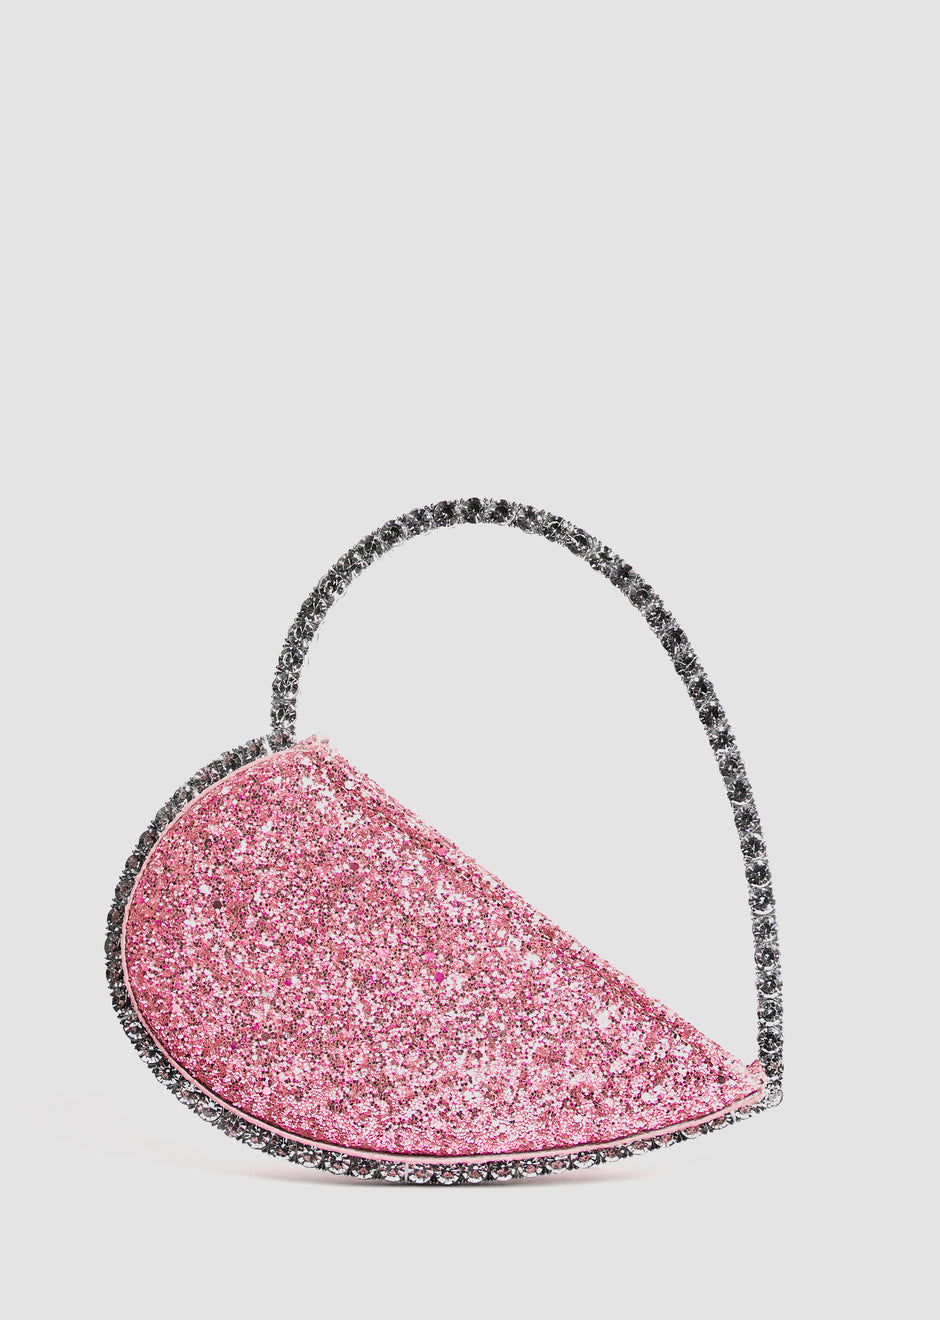 Heart shape Handbag